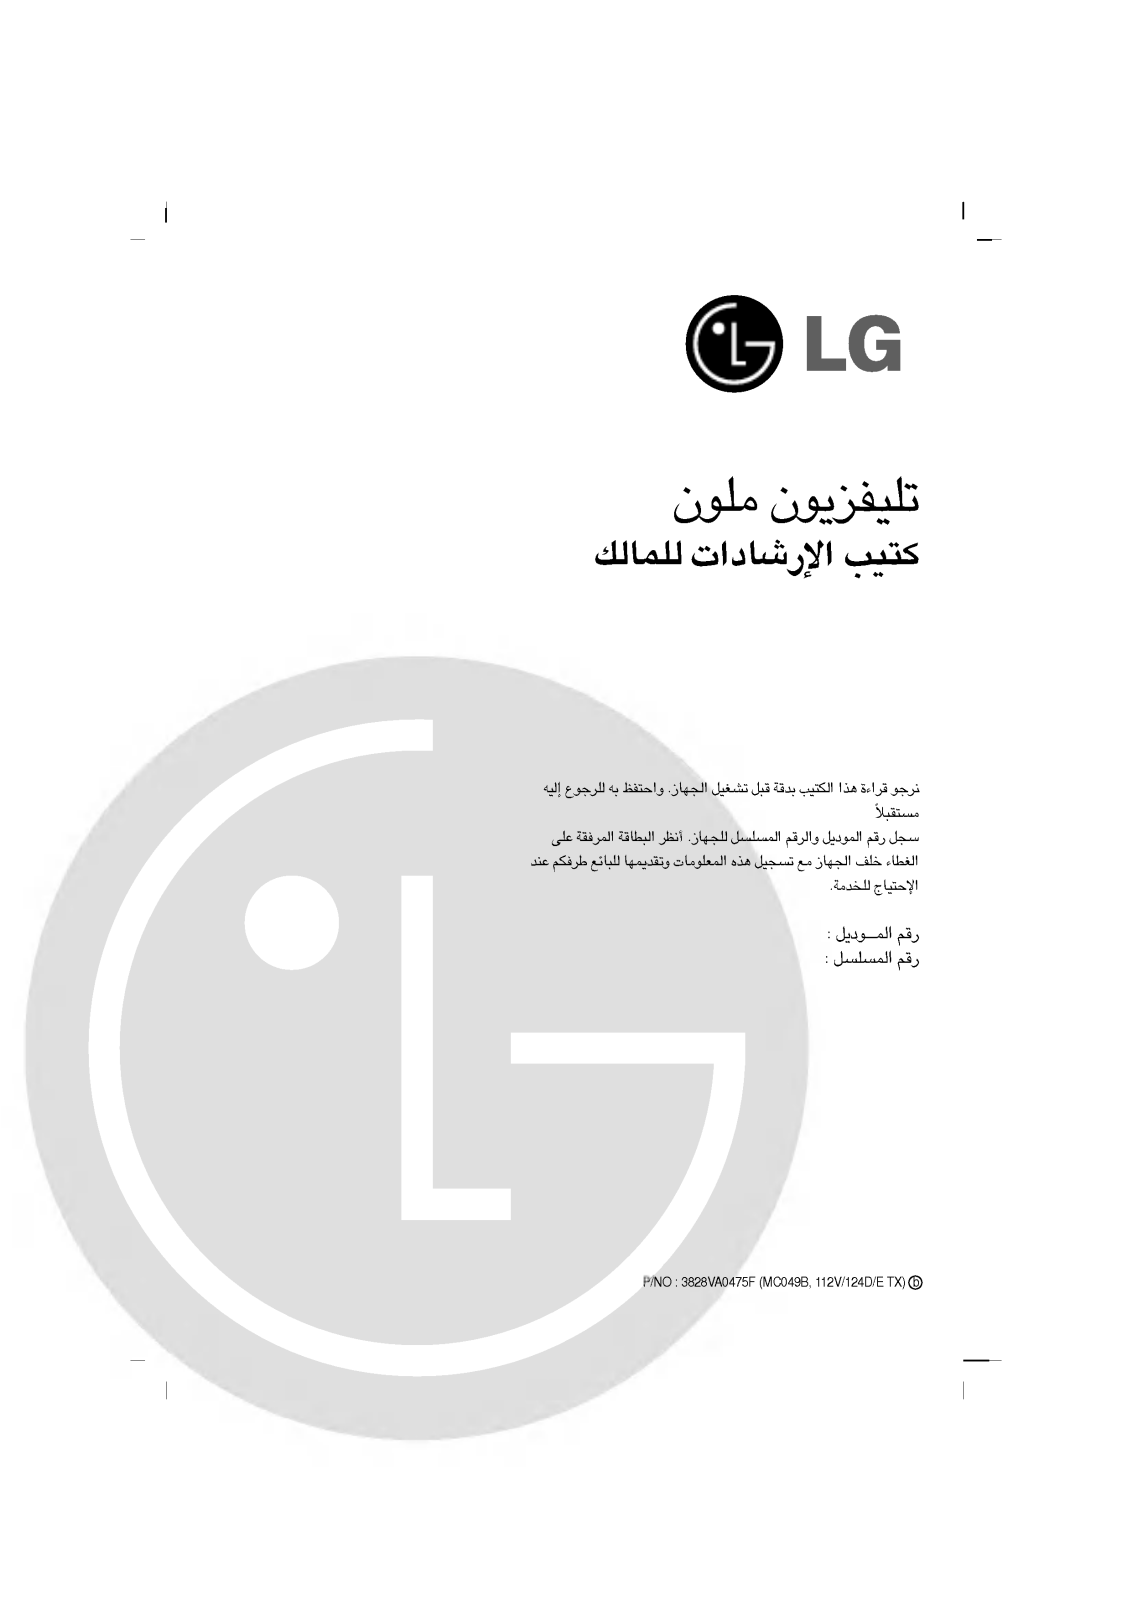 LG CT-14F35M Owner's Manual